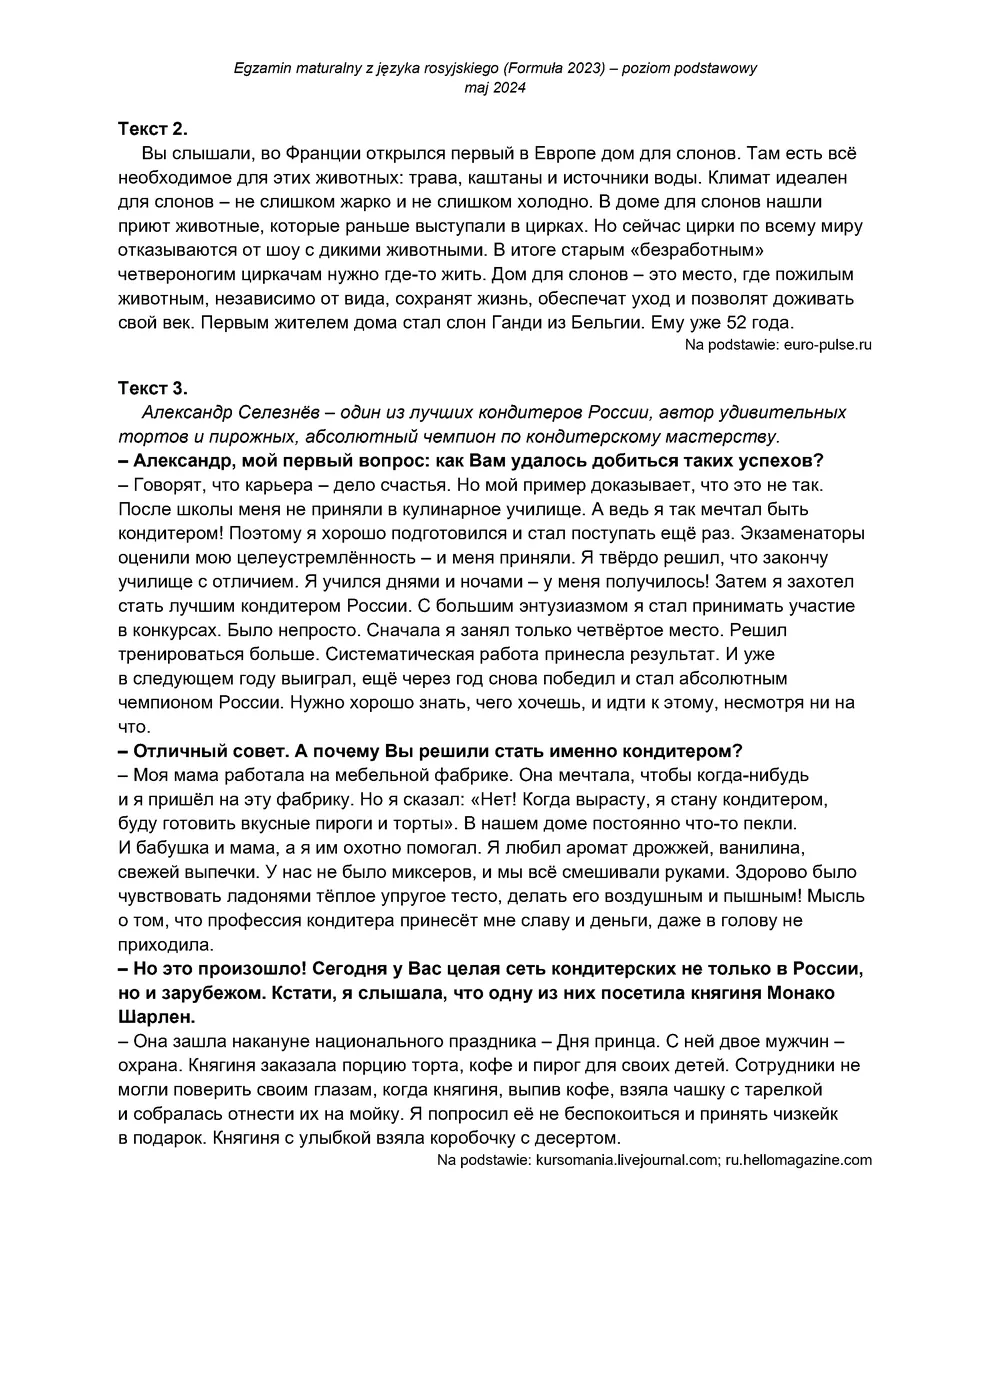 transkrypcja - rosyjski podstawowy - matura 2024 - maj - 0003